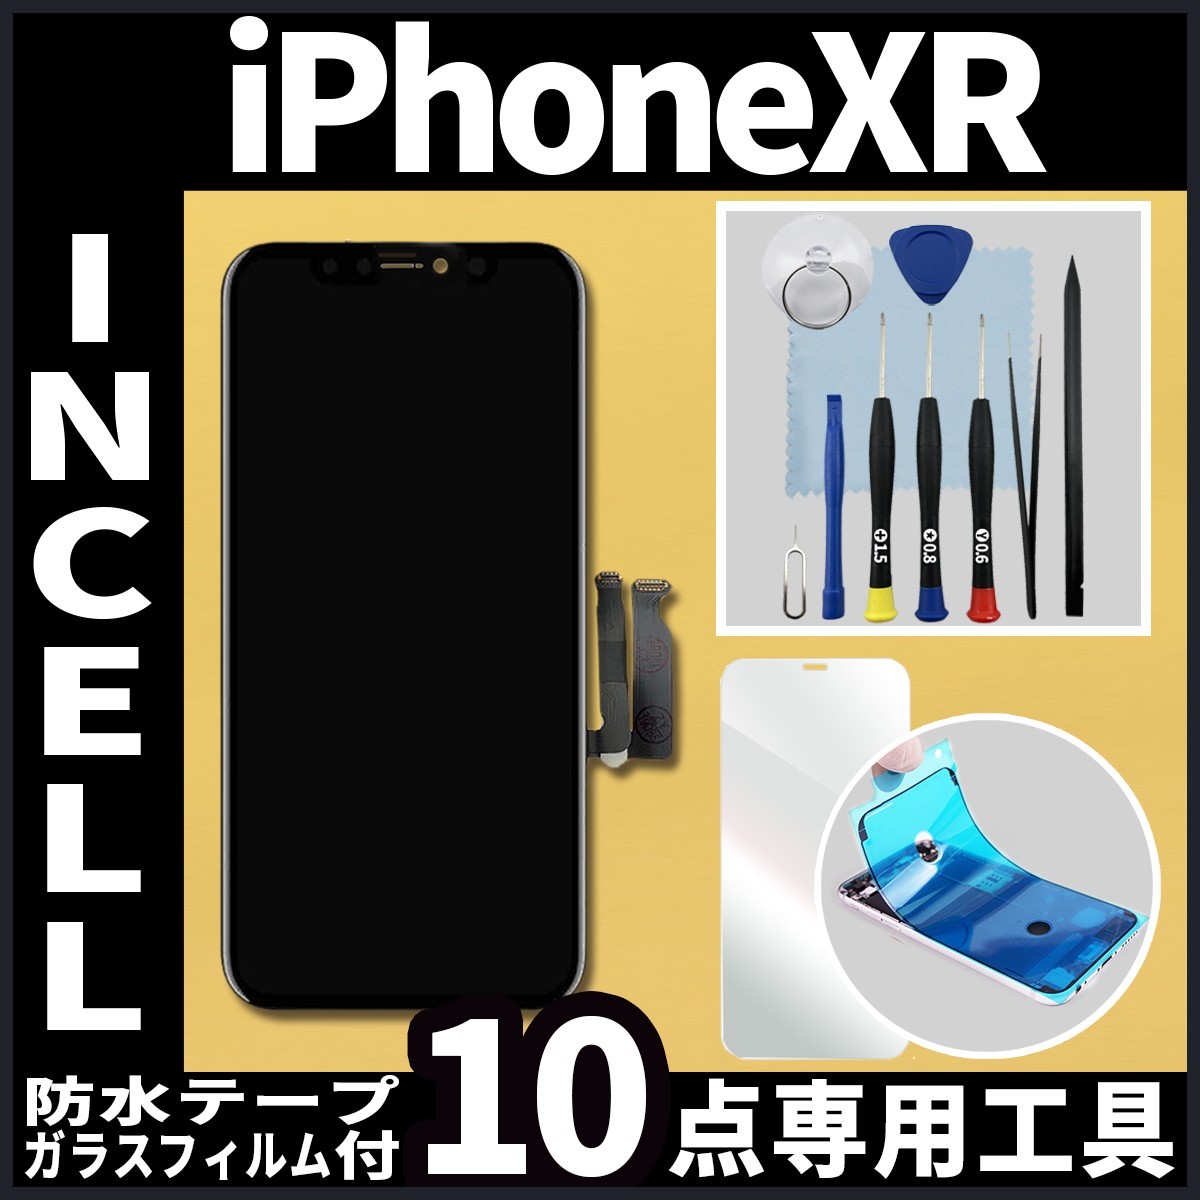 iPhoneXR フロントパネル Incell コピーパネル 高品質 防水テープ 修理工具 互換 画面割れ 液晶 修理 iphone ガラス割れ ディスプレイ_画像1